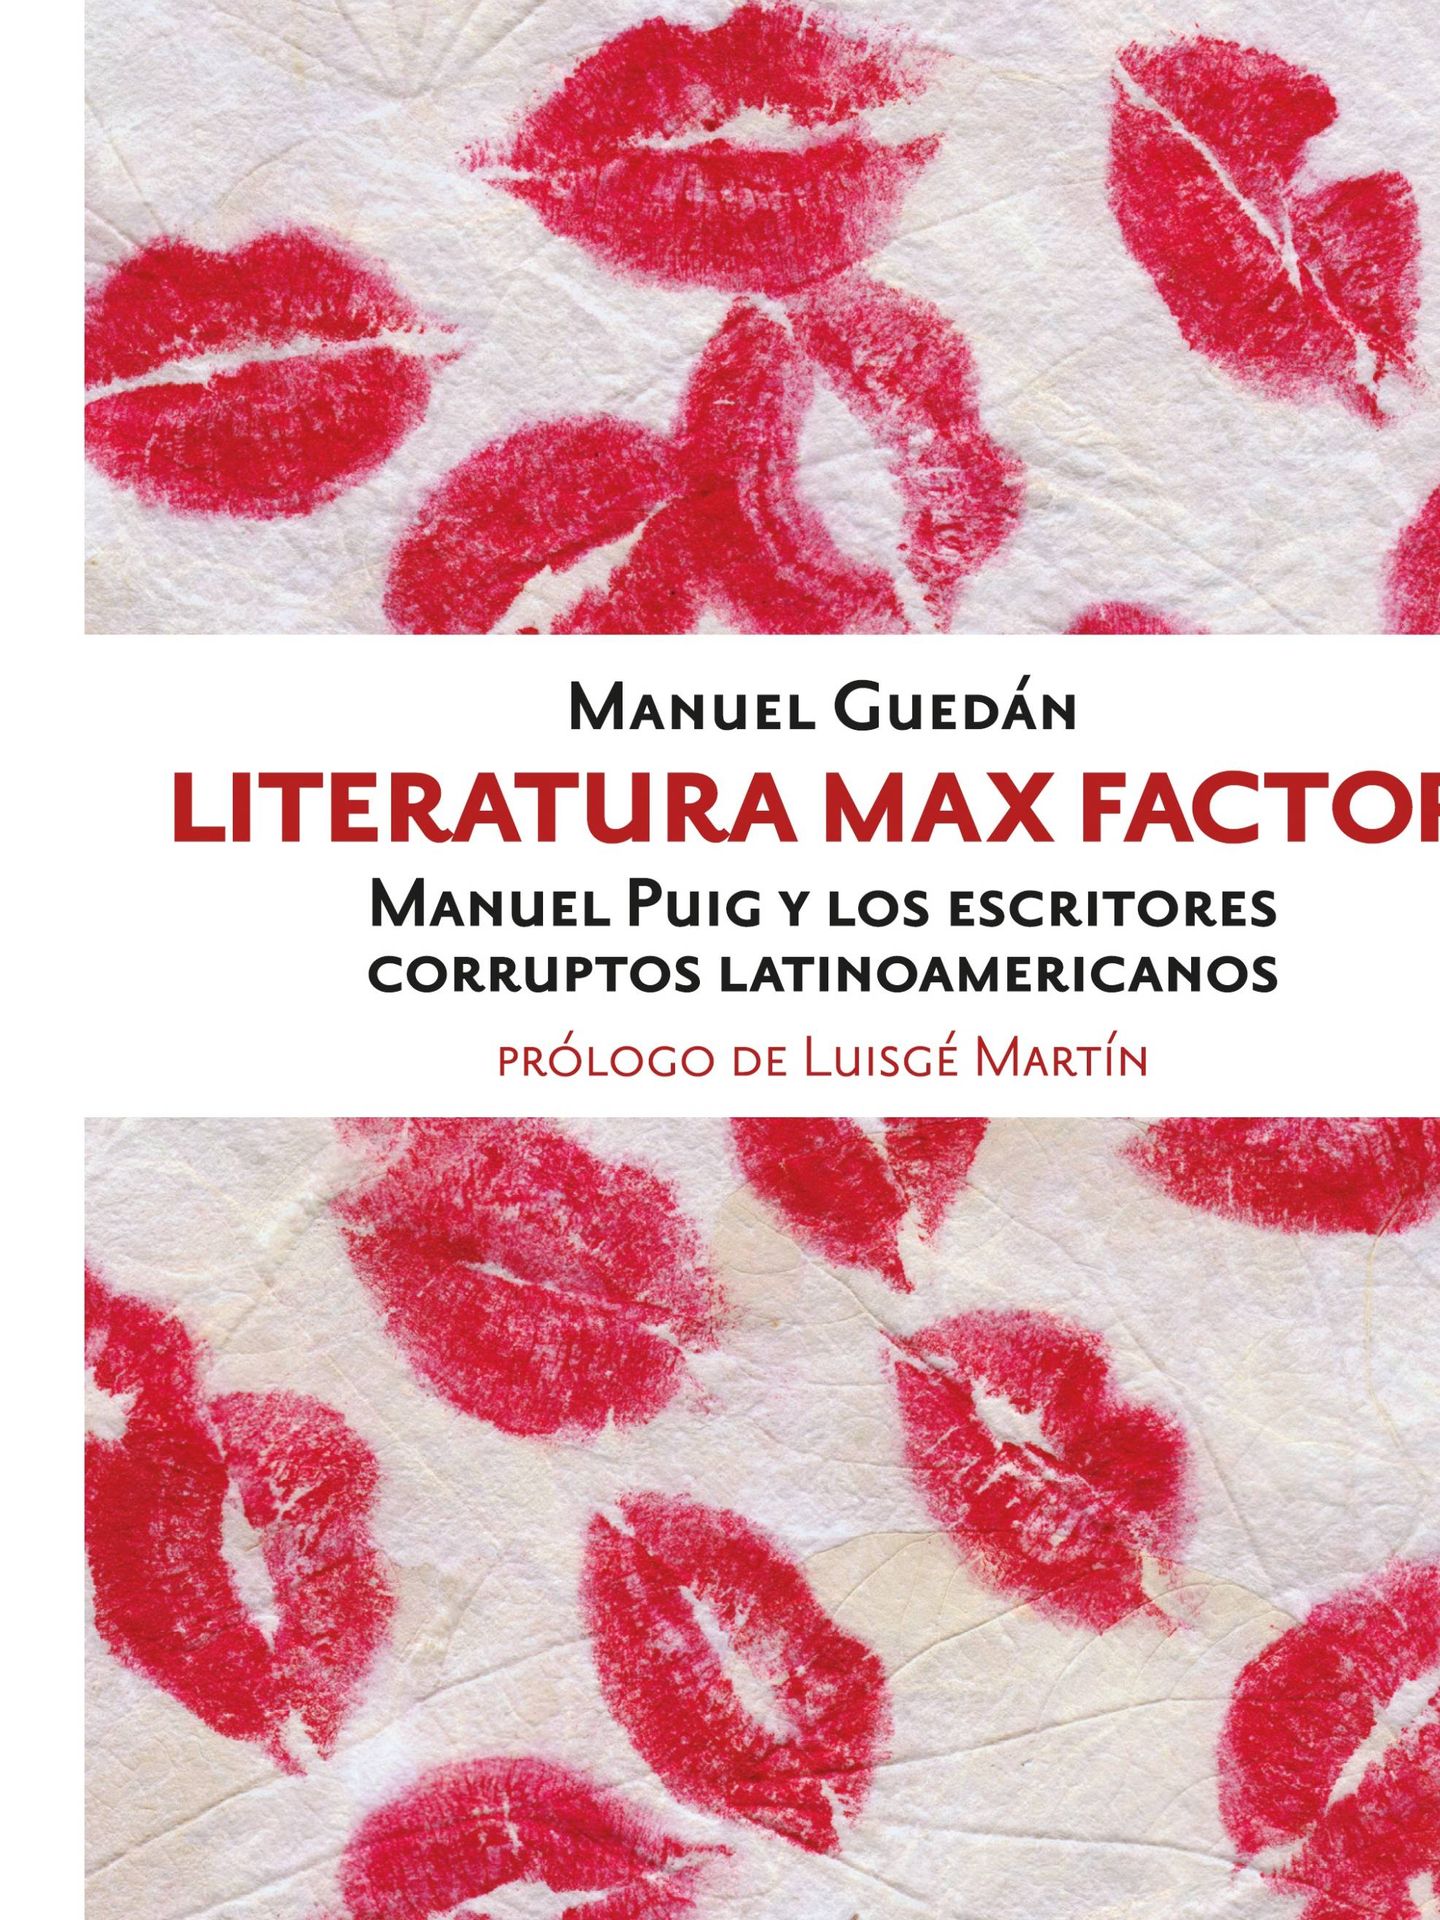 'Literatura Max Factor'